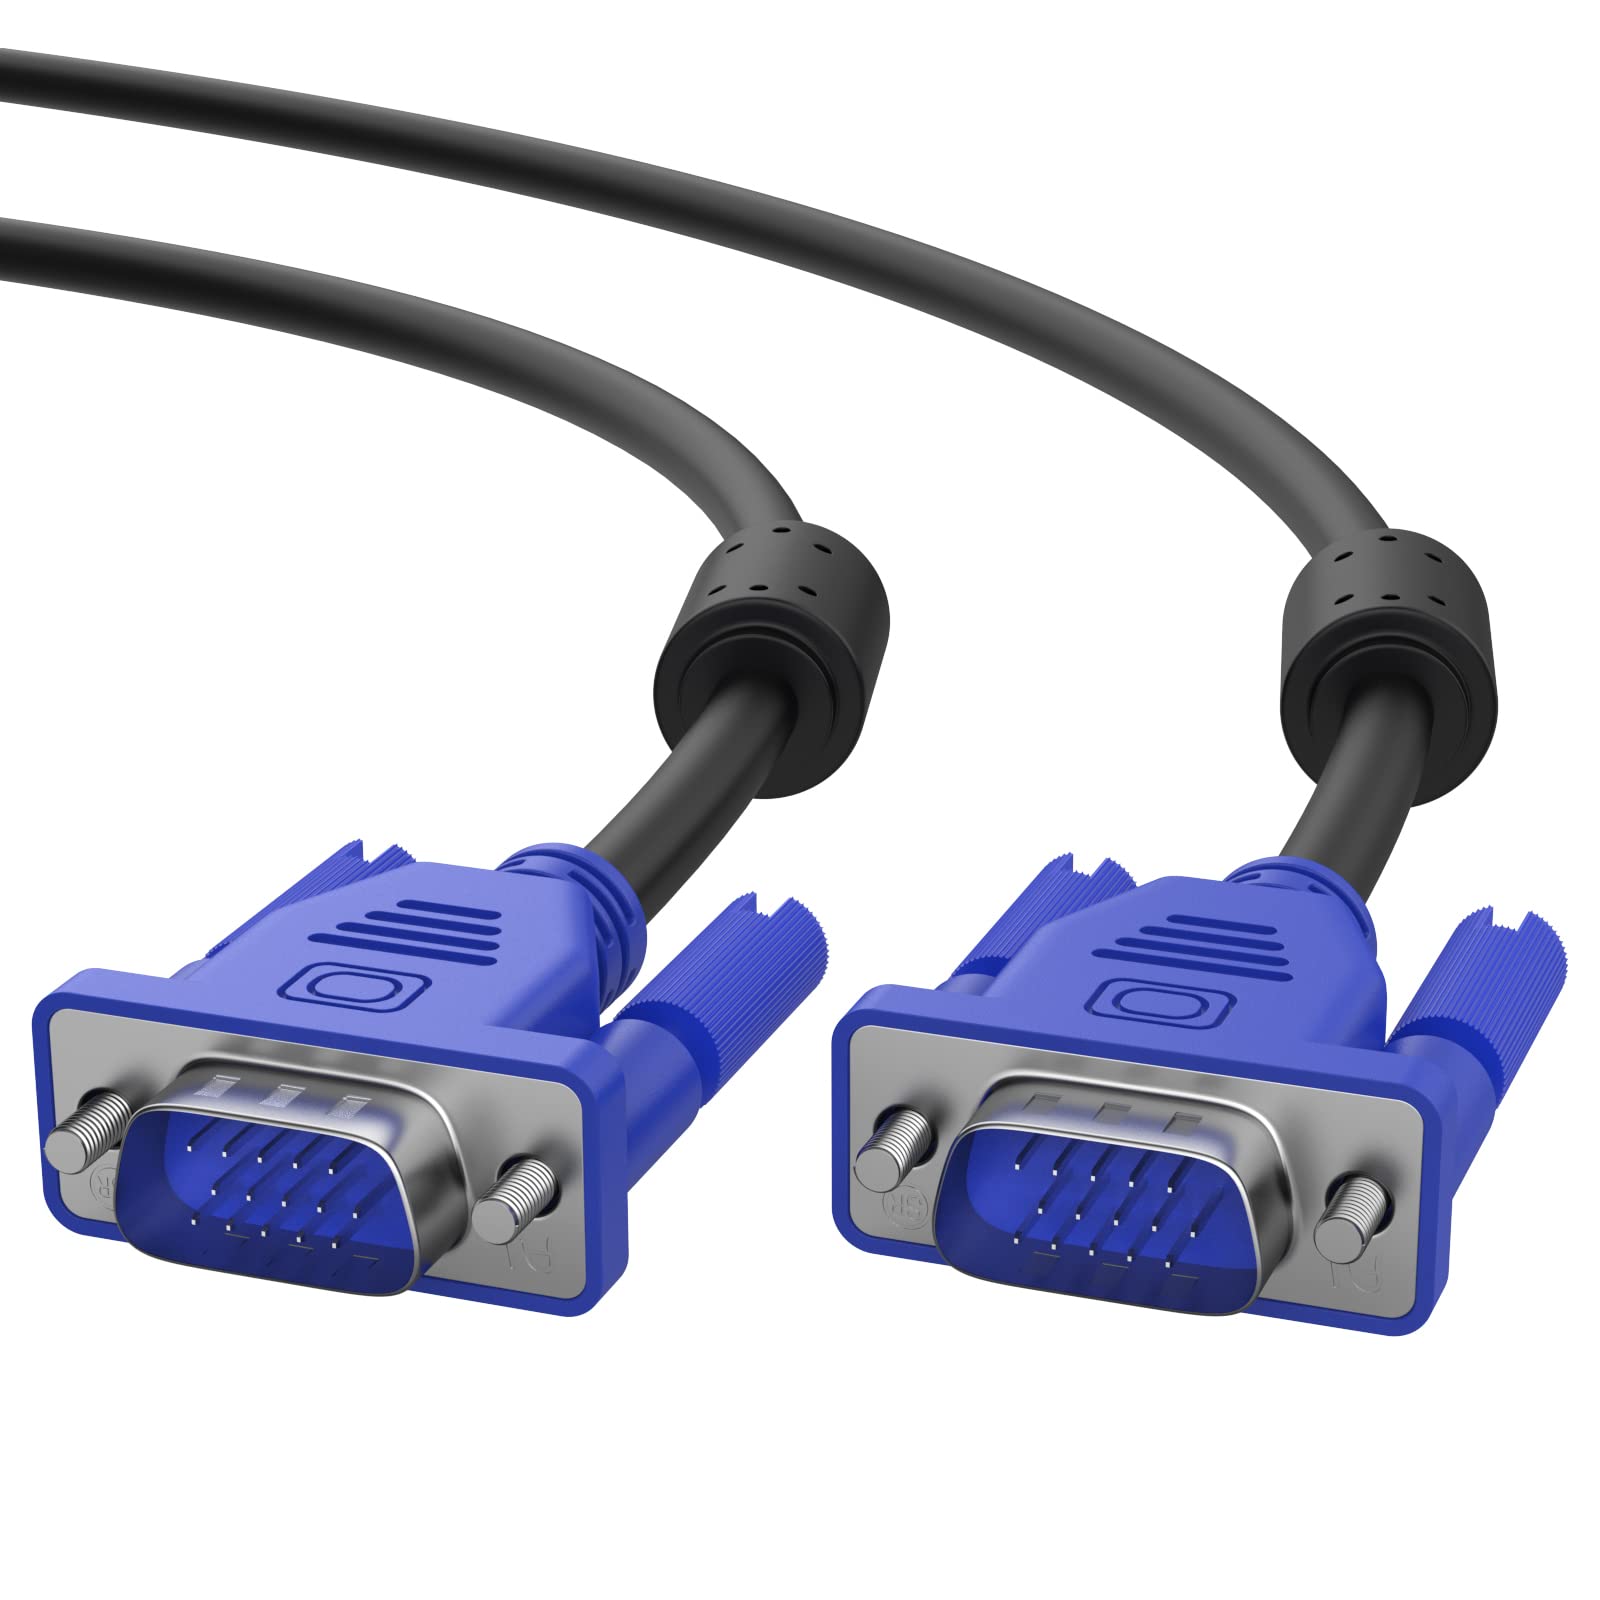 CB-VGA-CT VGA Cable Male-Male Connector